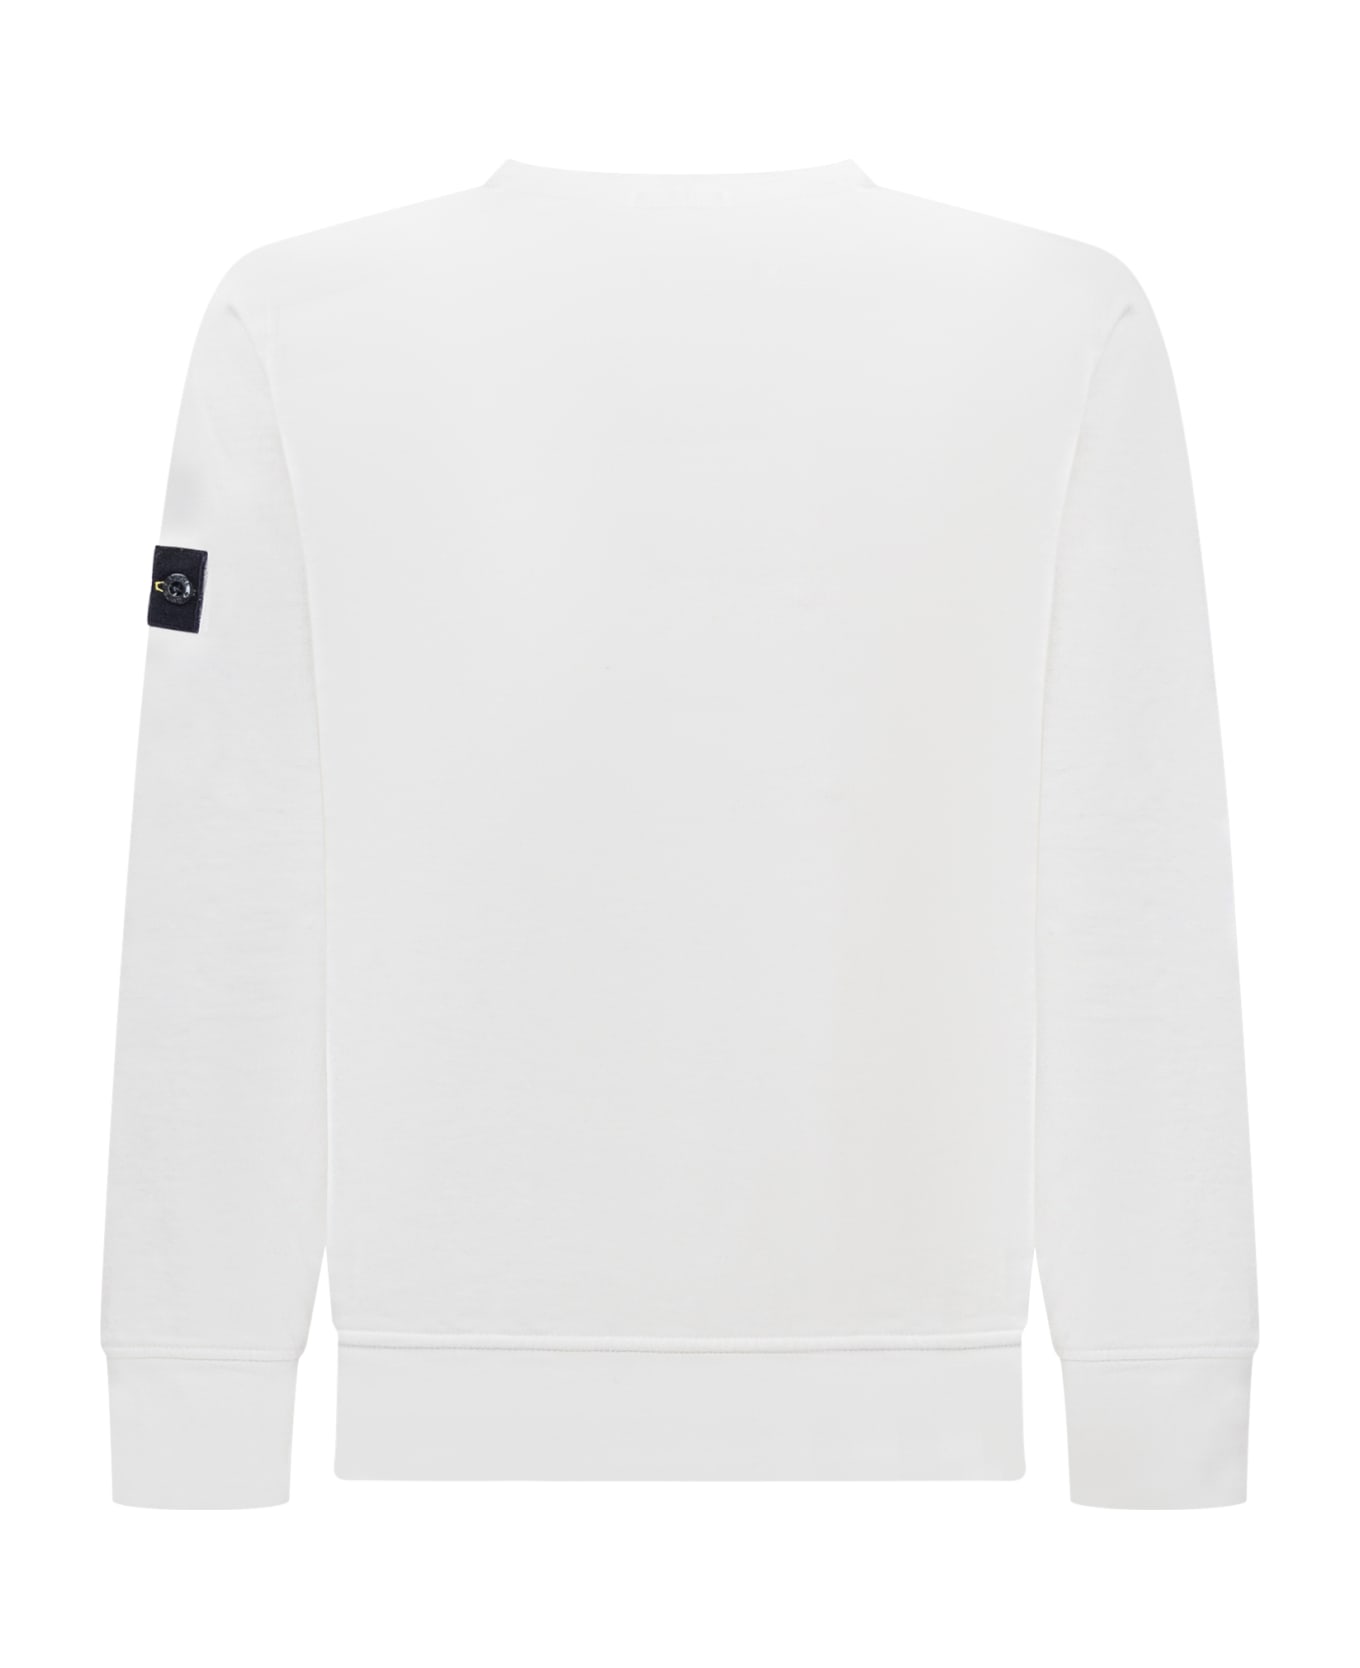 Stone Island Junior Logo Sweatshirt - WHITE